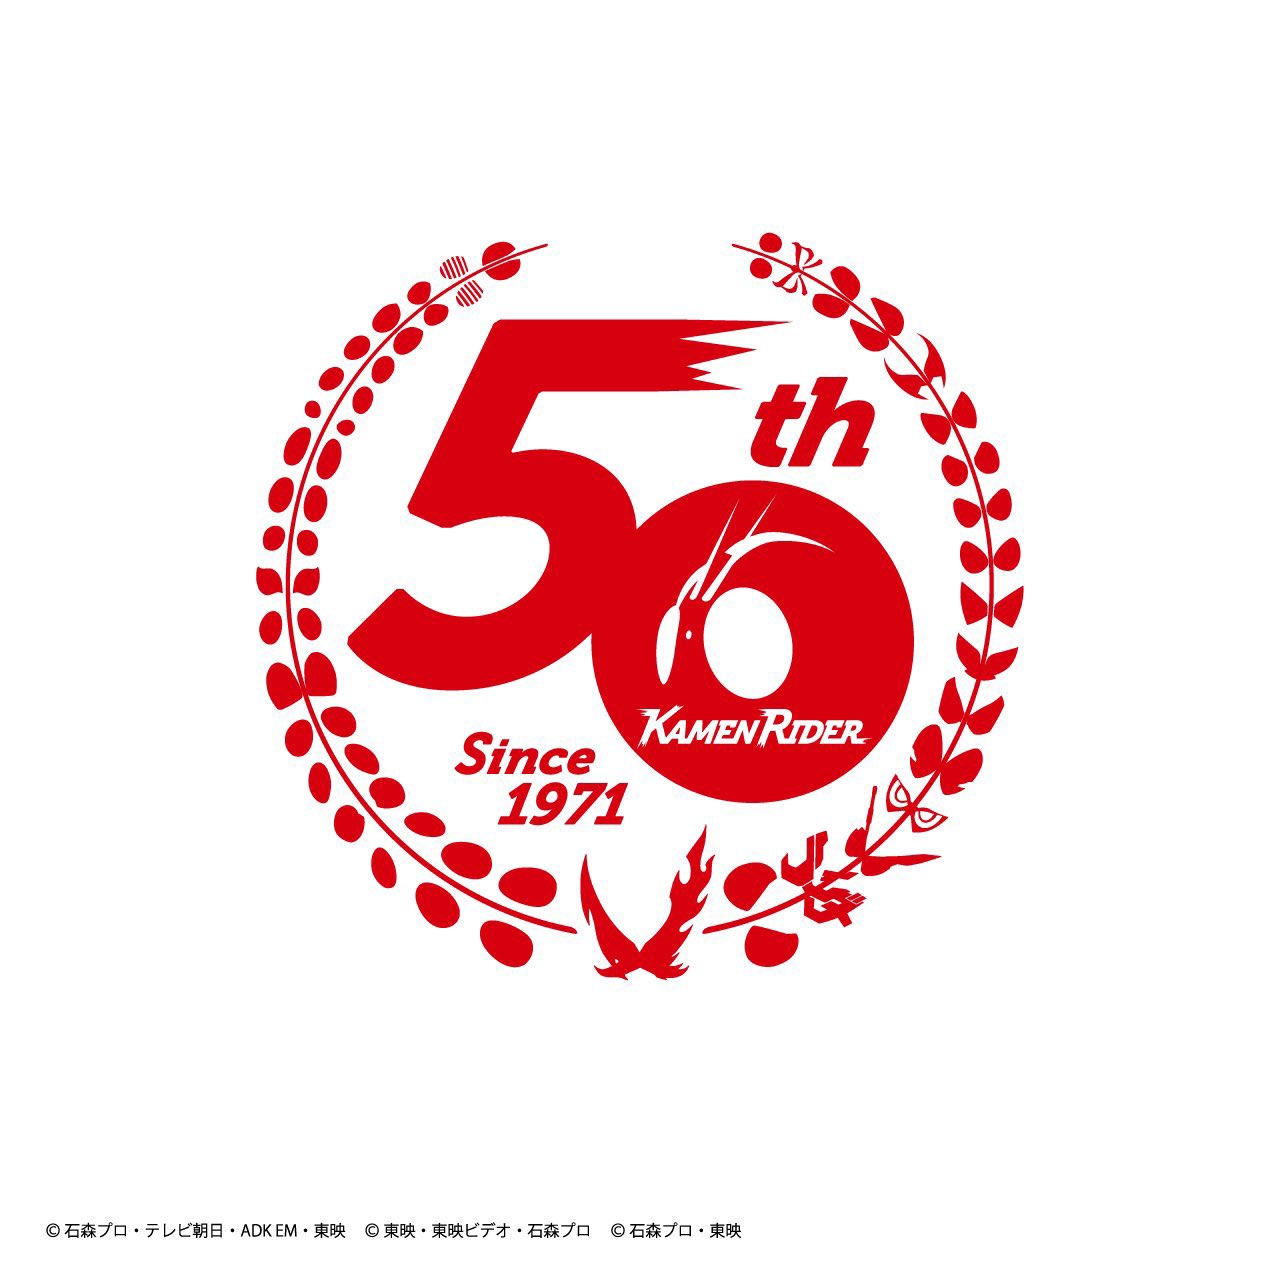 仮面ライダーシリーズ 2021年4月3日で生誕50周年! 記念企画も続々発表!